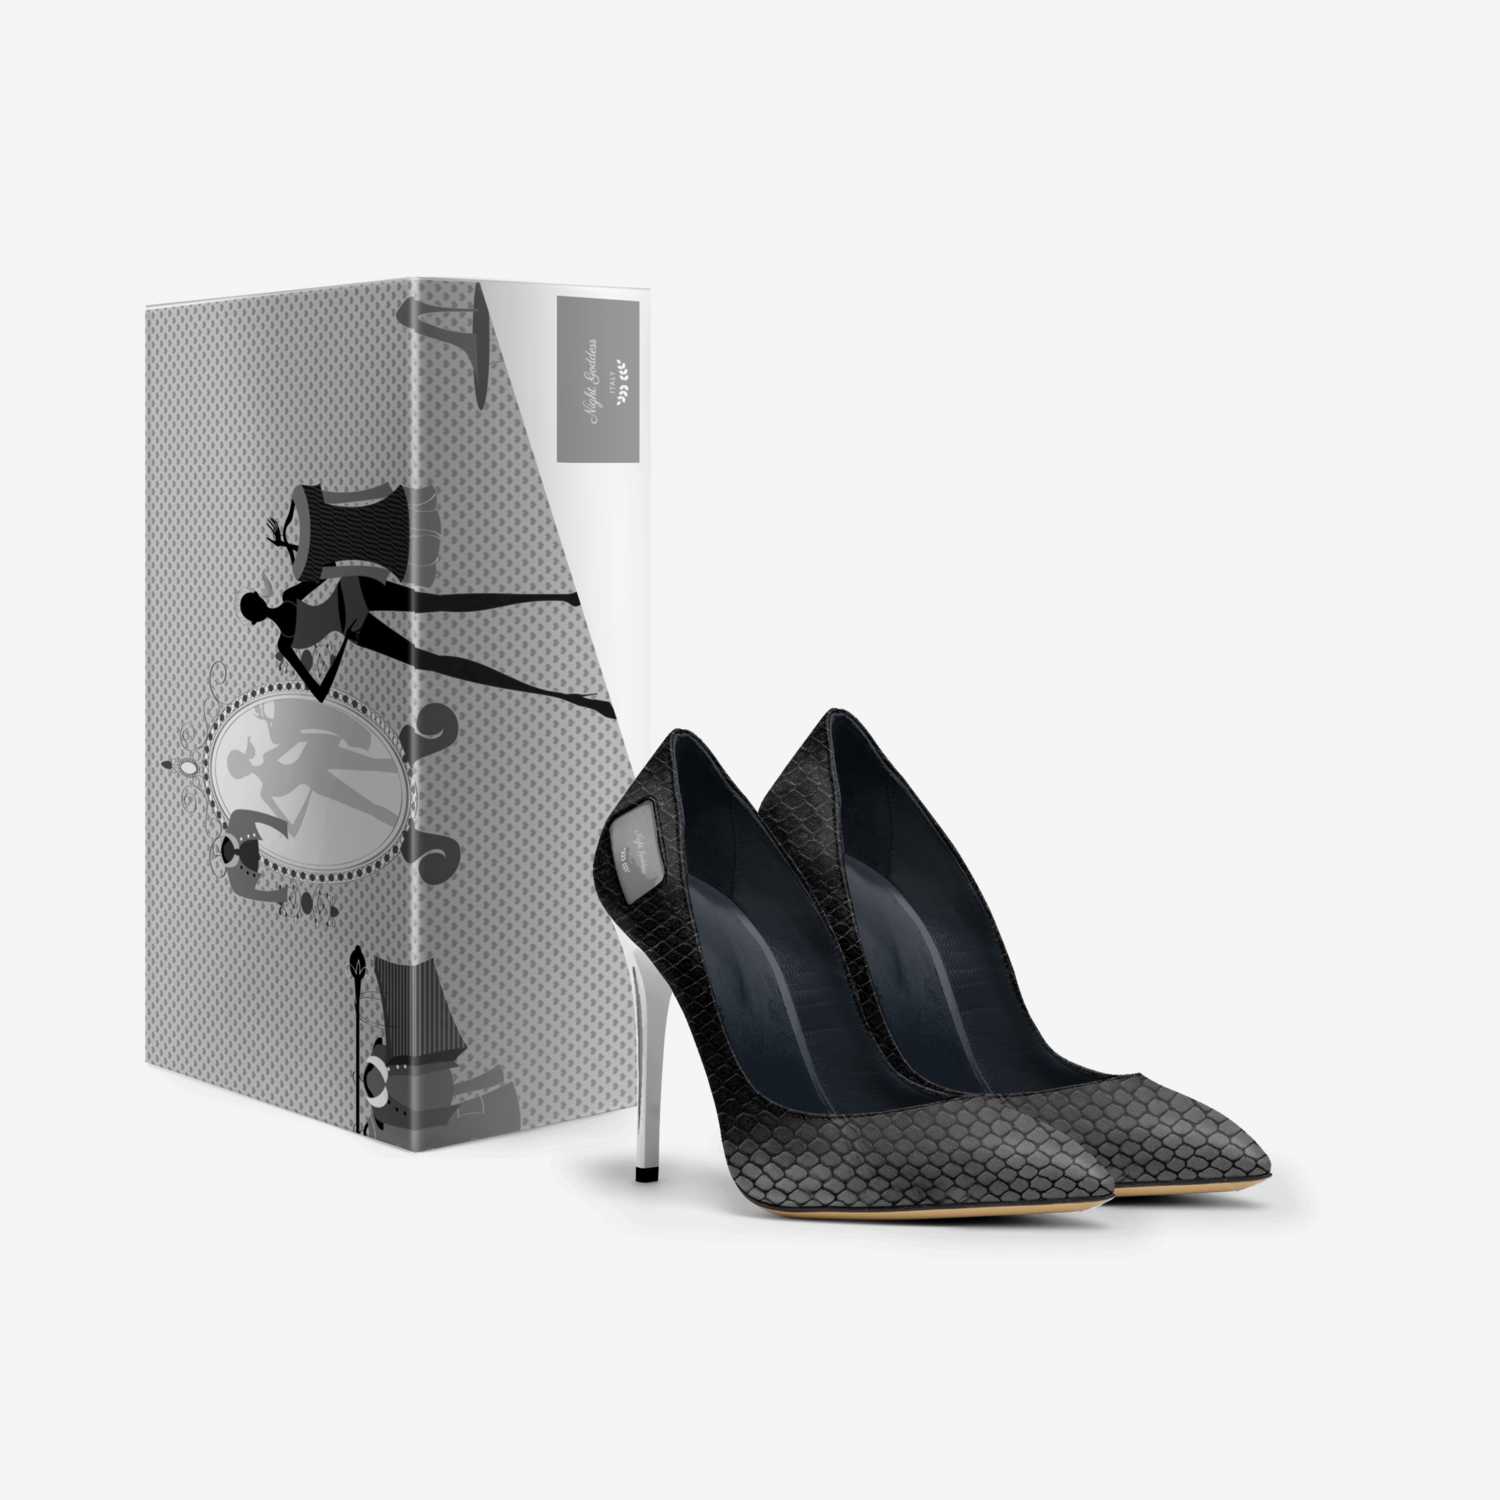 Night Goddess custom made in Italy shoes by Latotsha Gwynn | Box view